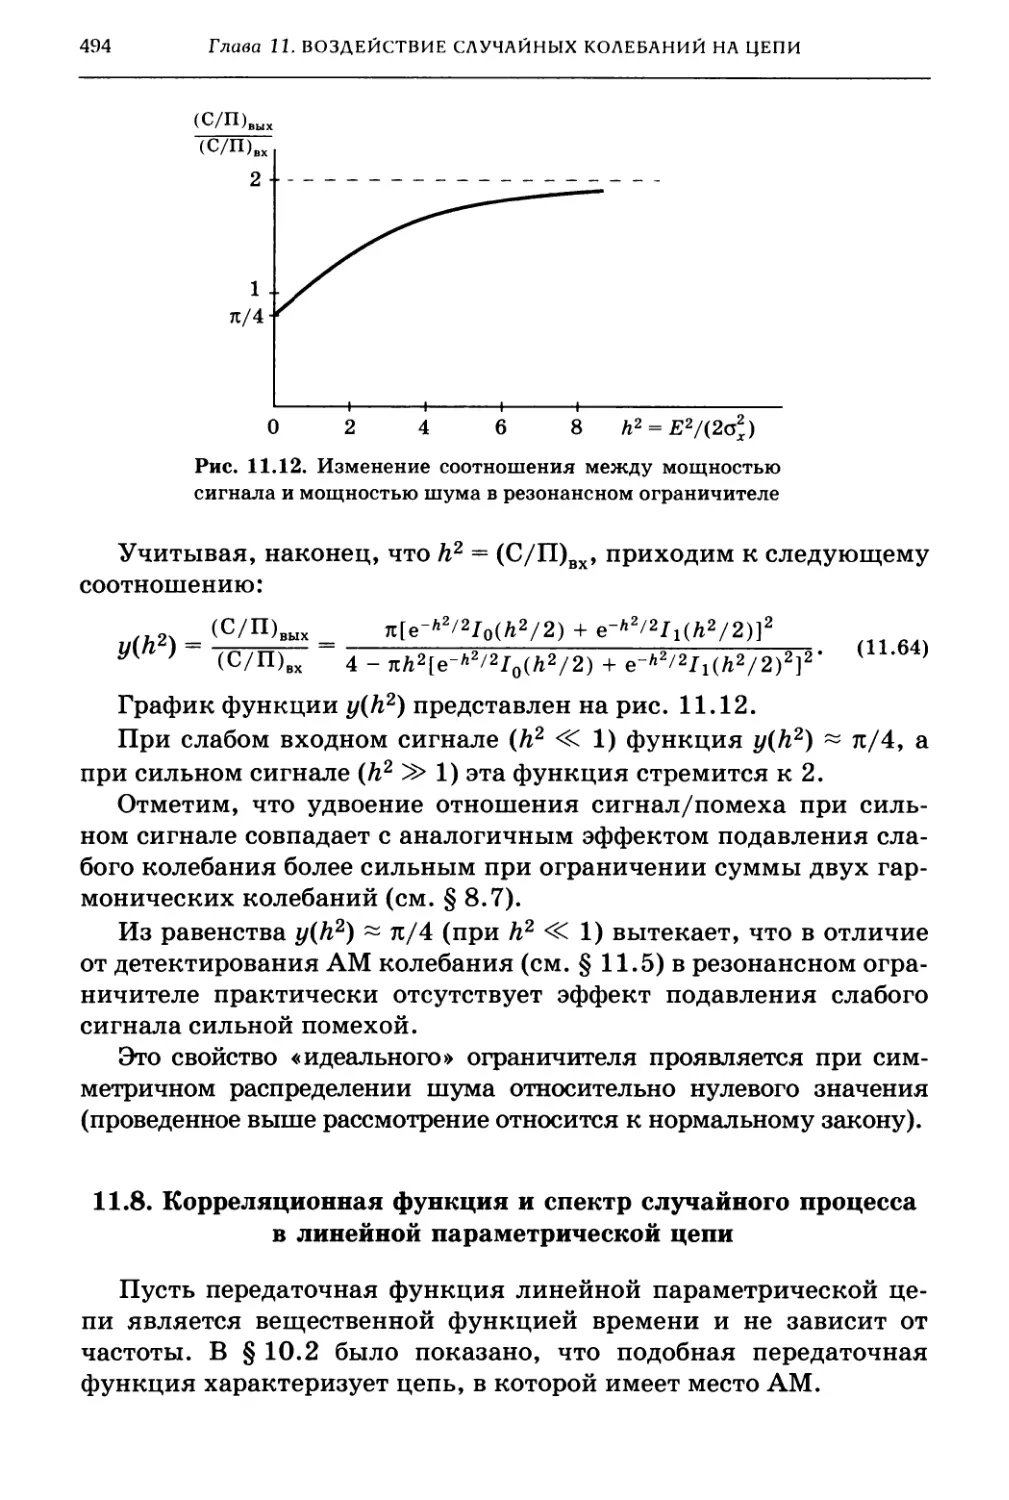 11.8. Корреляционная функция и спектр случайного процесса в линейной параметрической цепи